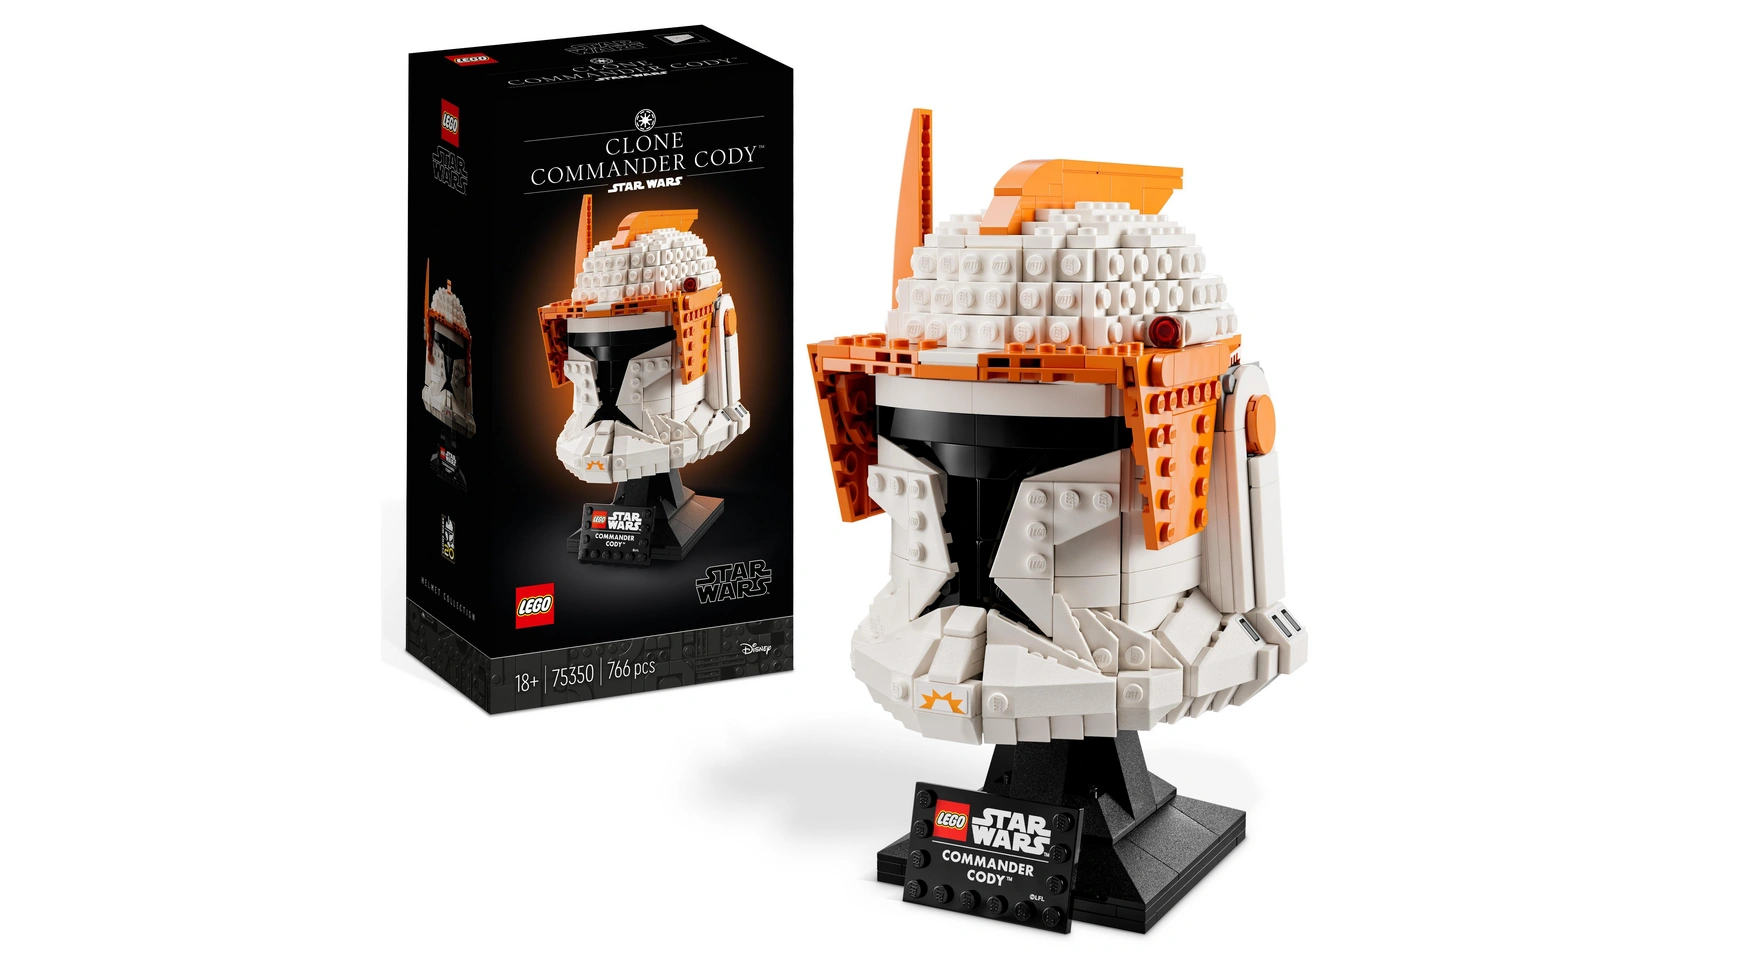 Lego Star Wars Набор шлемов командира клонов Коди для взрослых музыка из фильма звездные войны трилогия для фортепиано